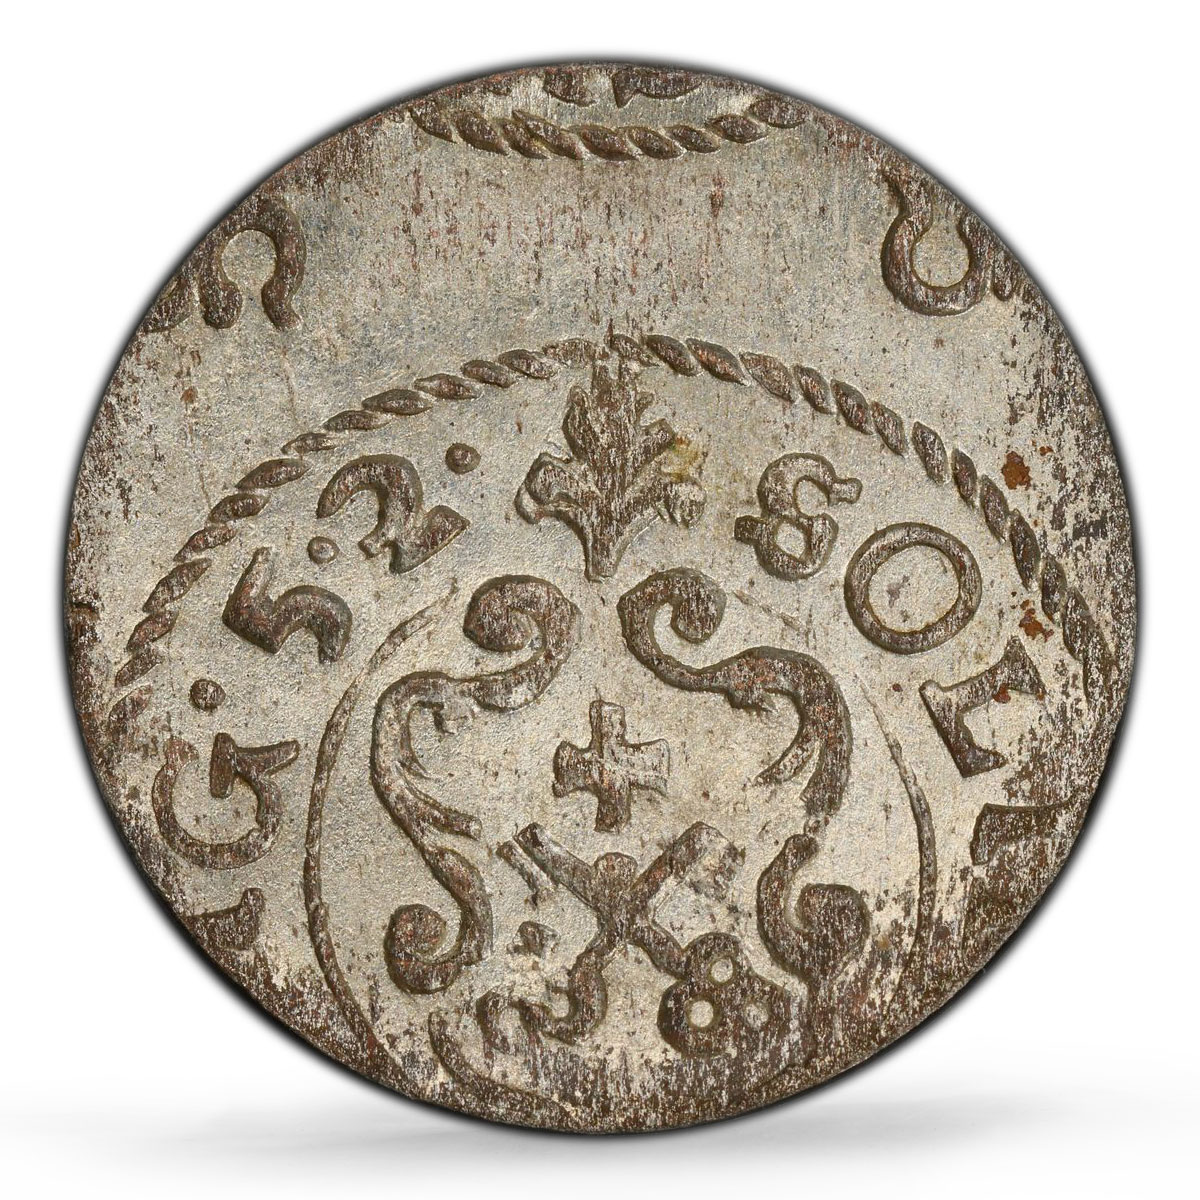 Sweden Swedish Livonia 1 solidus Christina KM-2 MS64 PCGS billon coin 1652